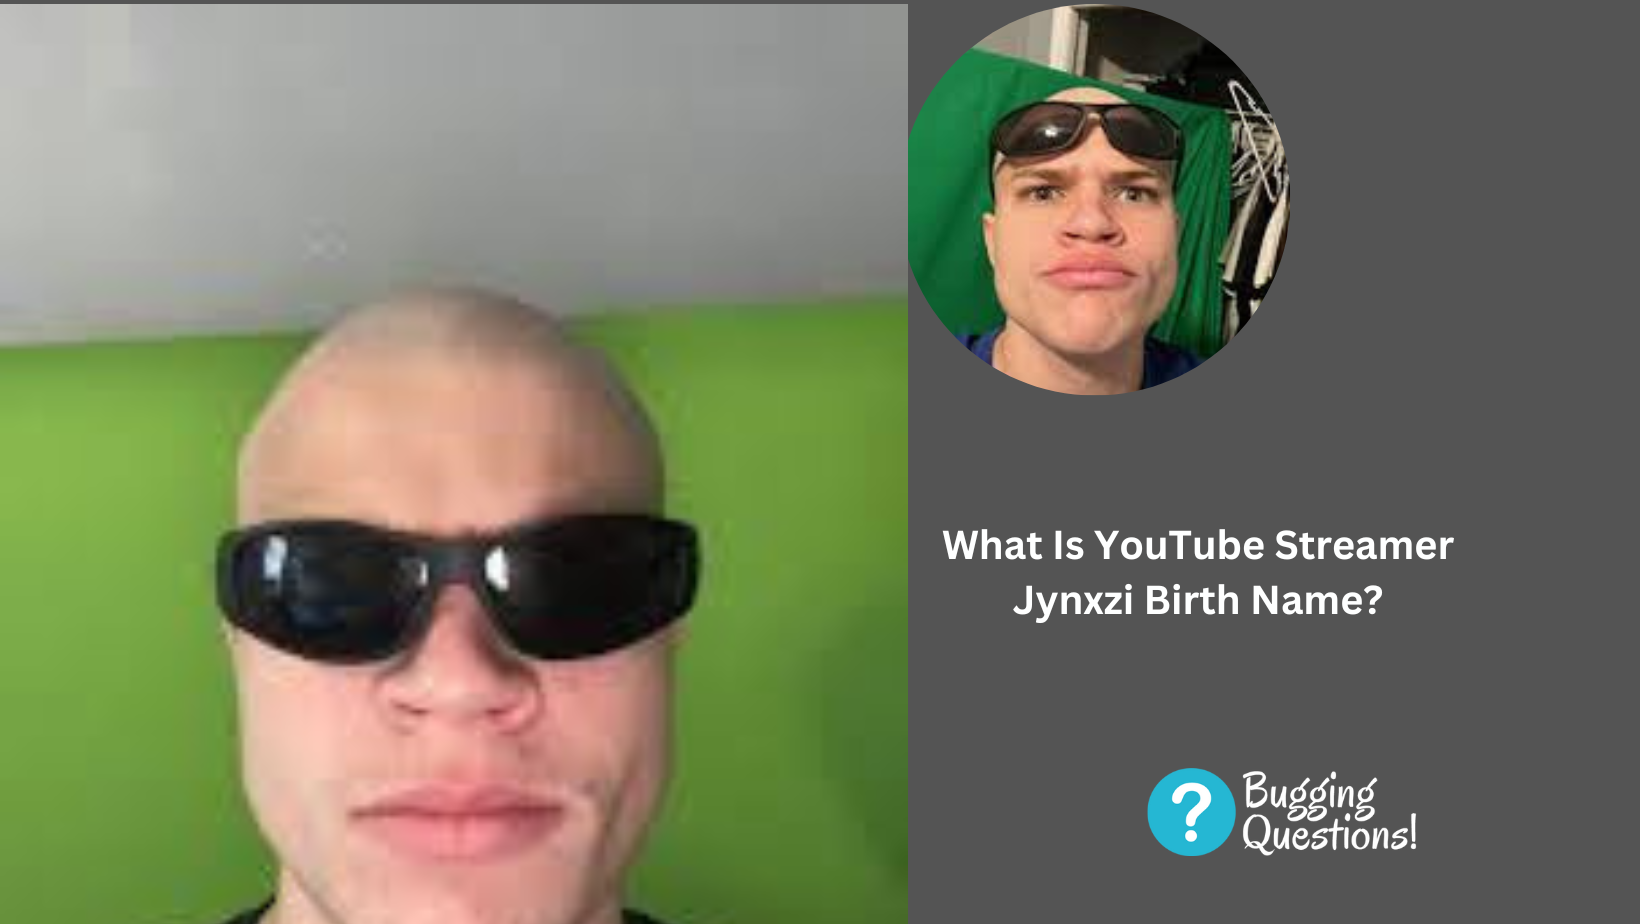 What Is YouTube Streamer Jynxzi Birth Name?